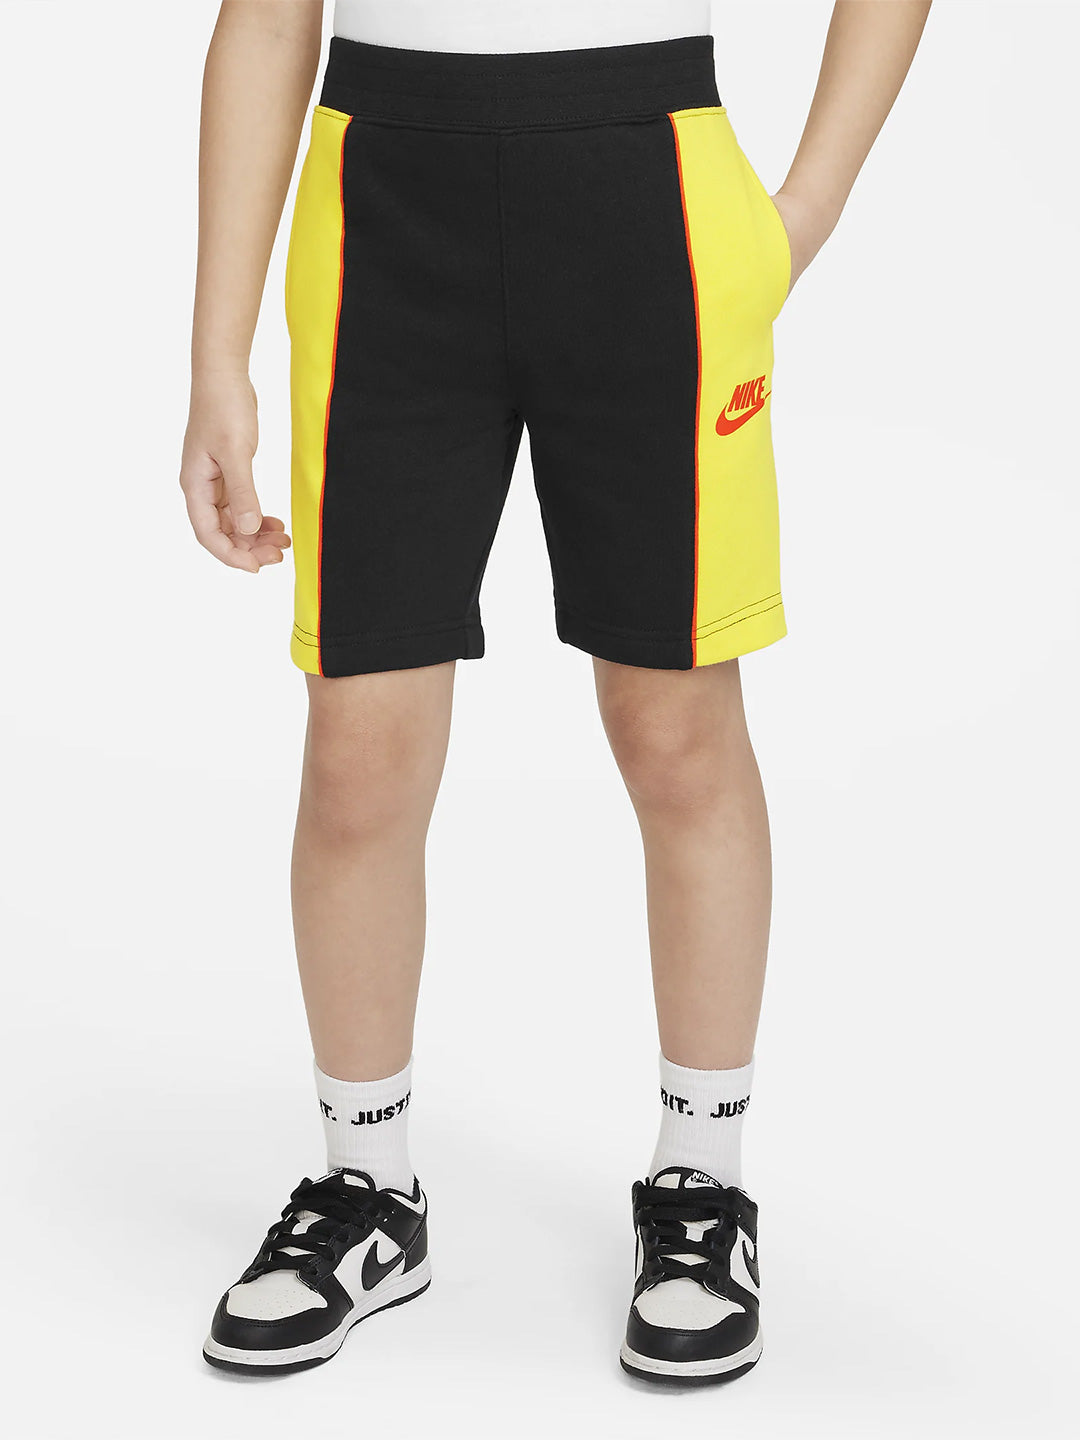 Nike Kids bermuda giallo e nero